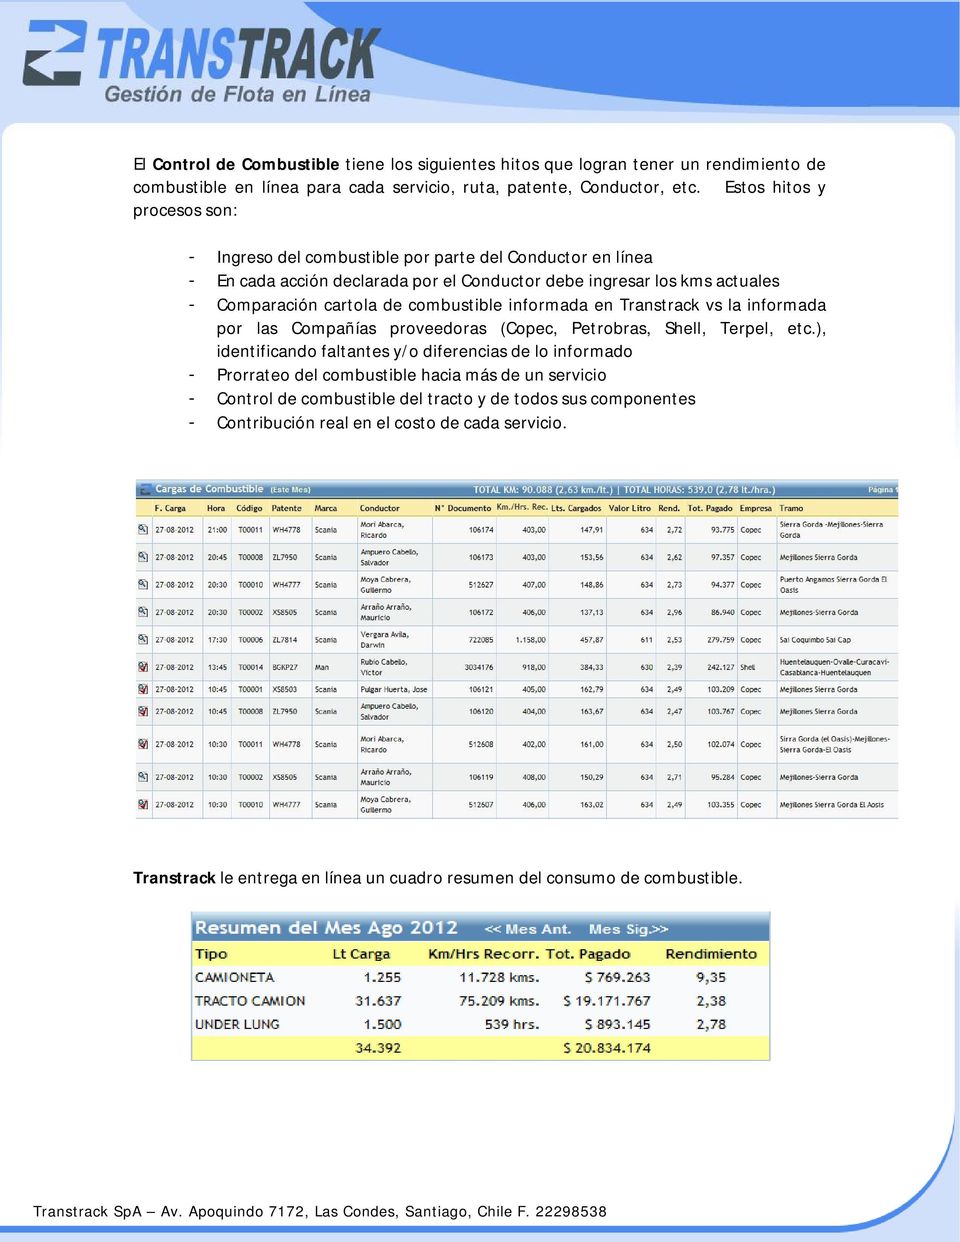 combustible informada en Transtrack vs la informada por las Compañías proveedoras (Copec, Petrobras, Shell, Terpel, etc.